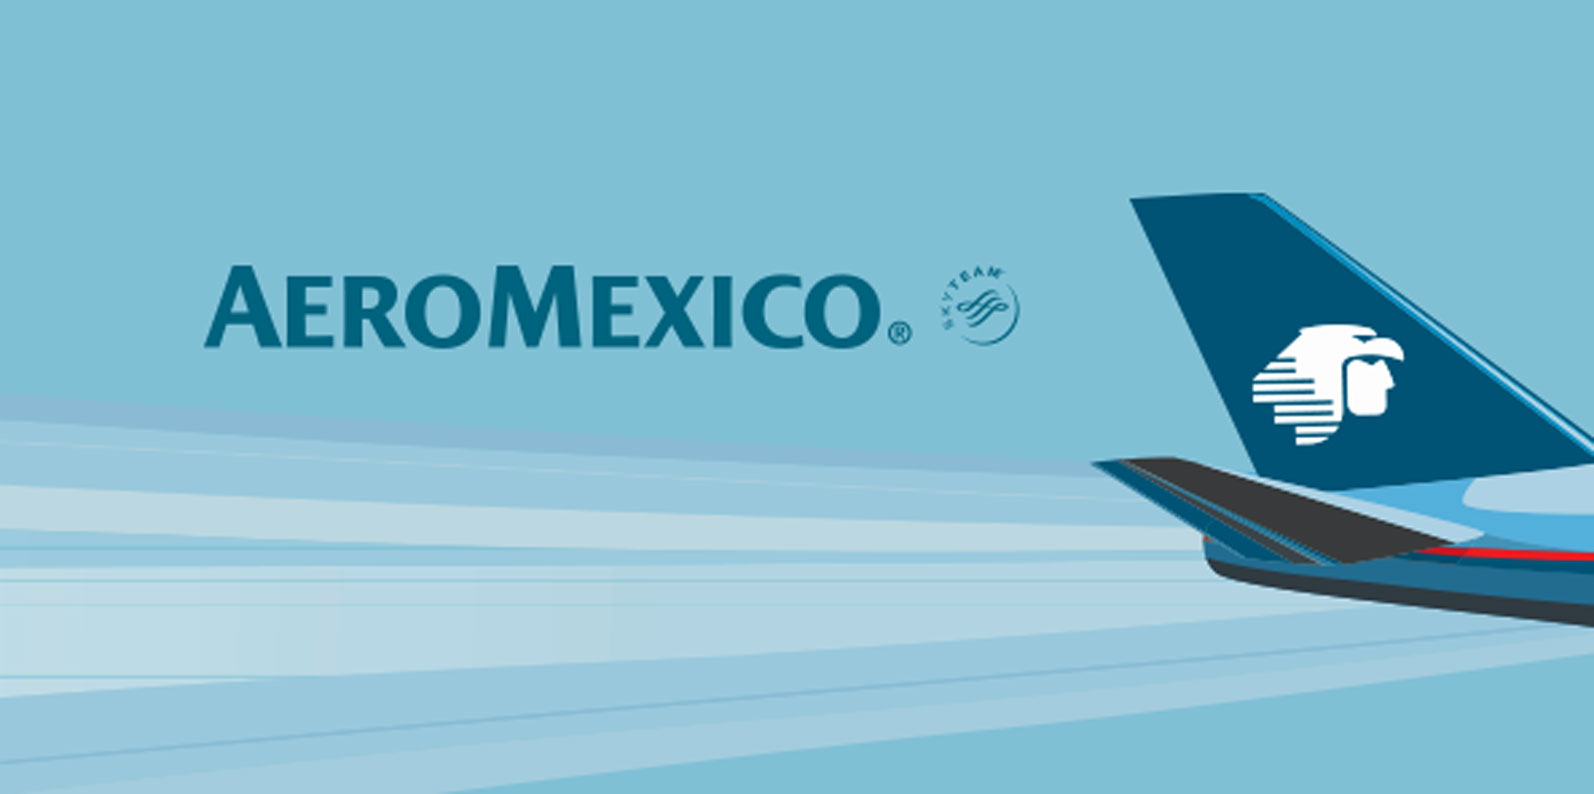 AeroMexico